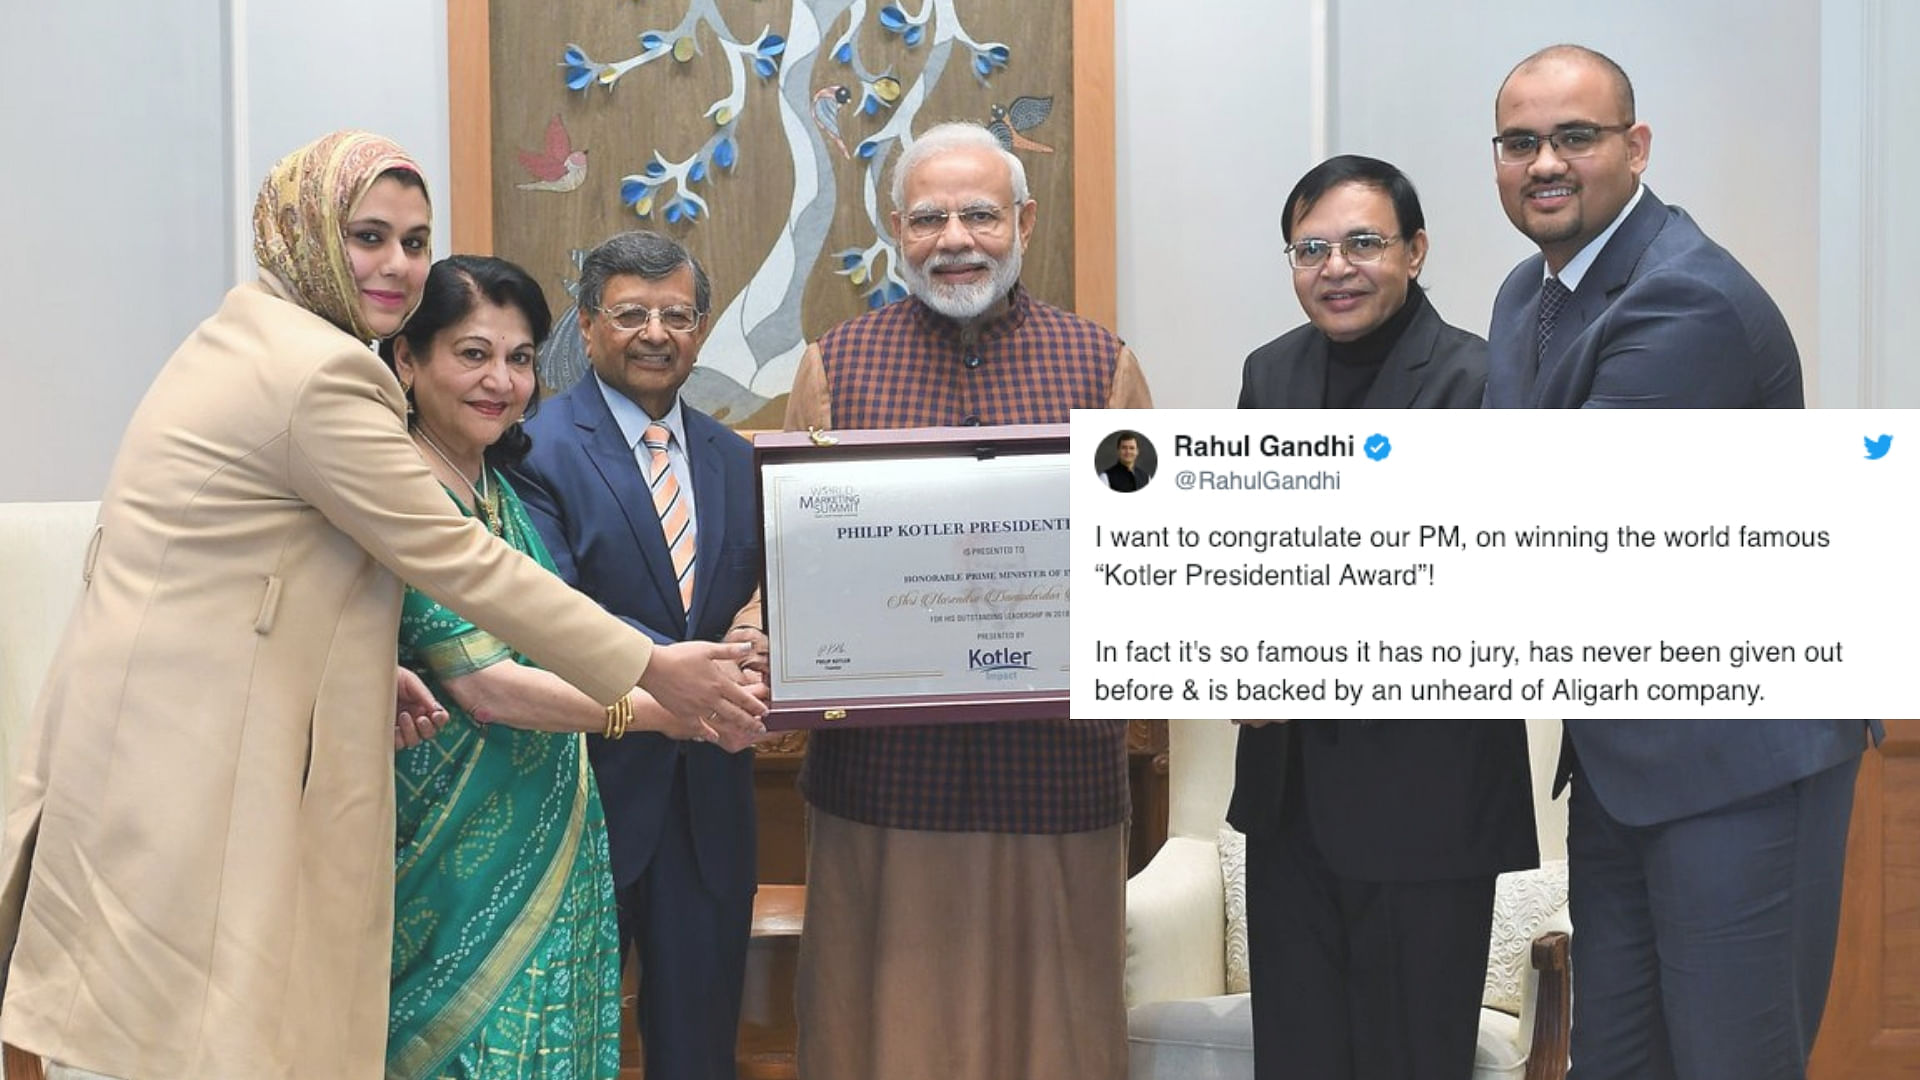 राहुल गांधी ने पीएम मोदी पर तंज कसते हुए एक ट्वीट किया है